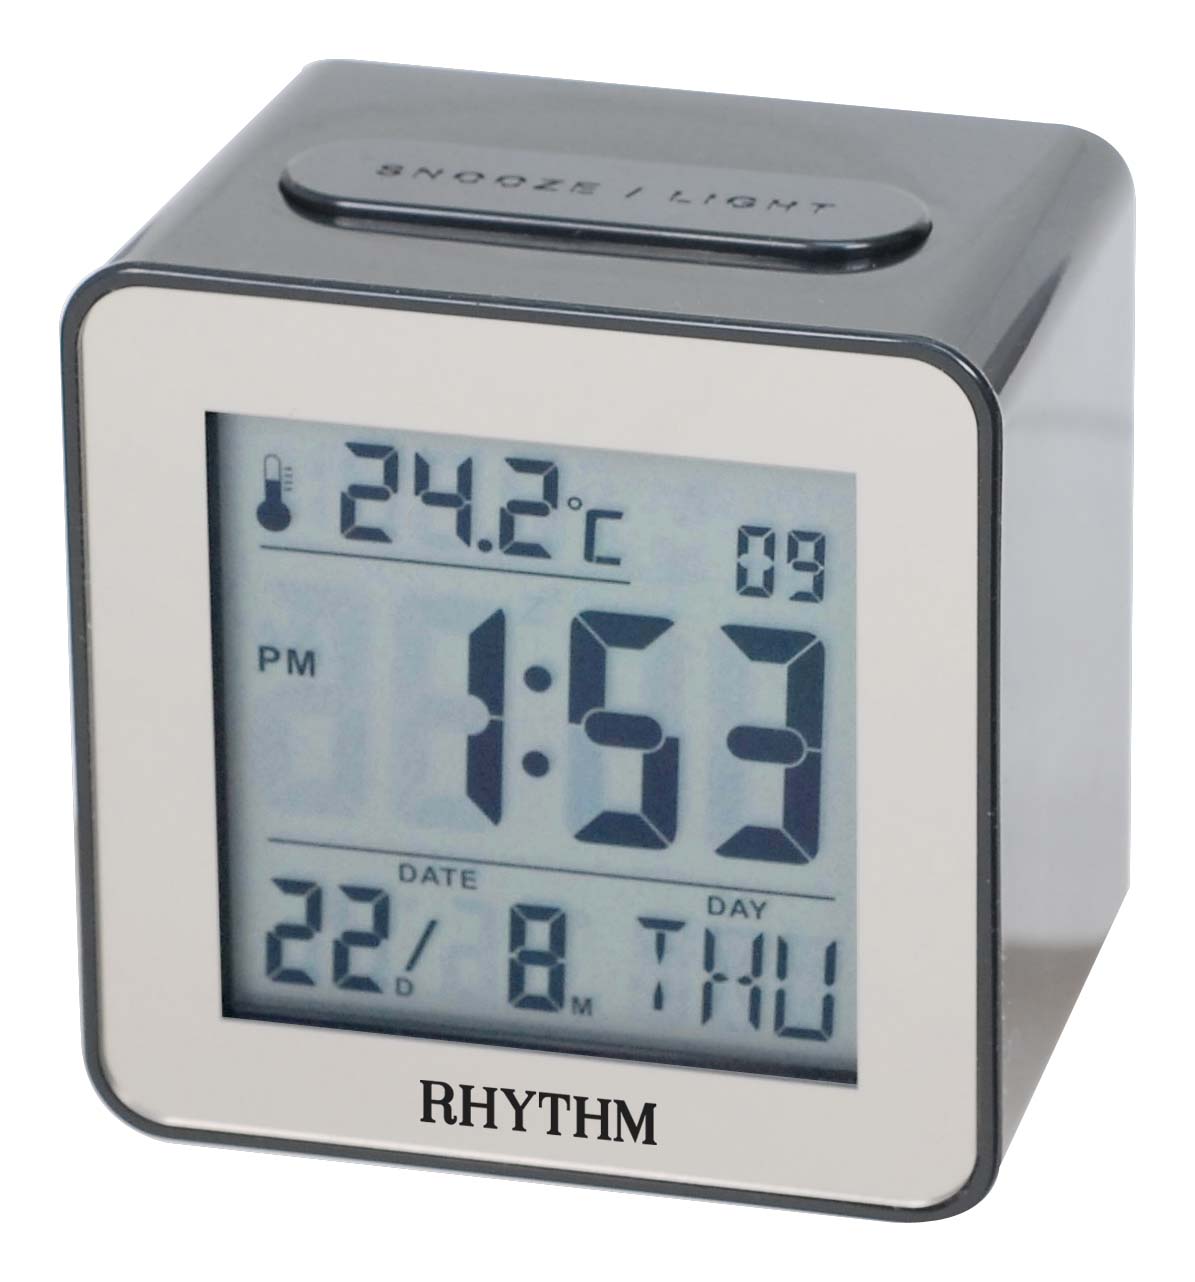 Rhythm Digital alarm clock black LCT076NR02